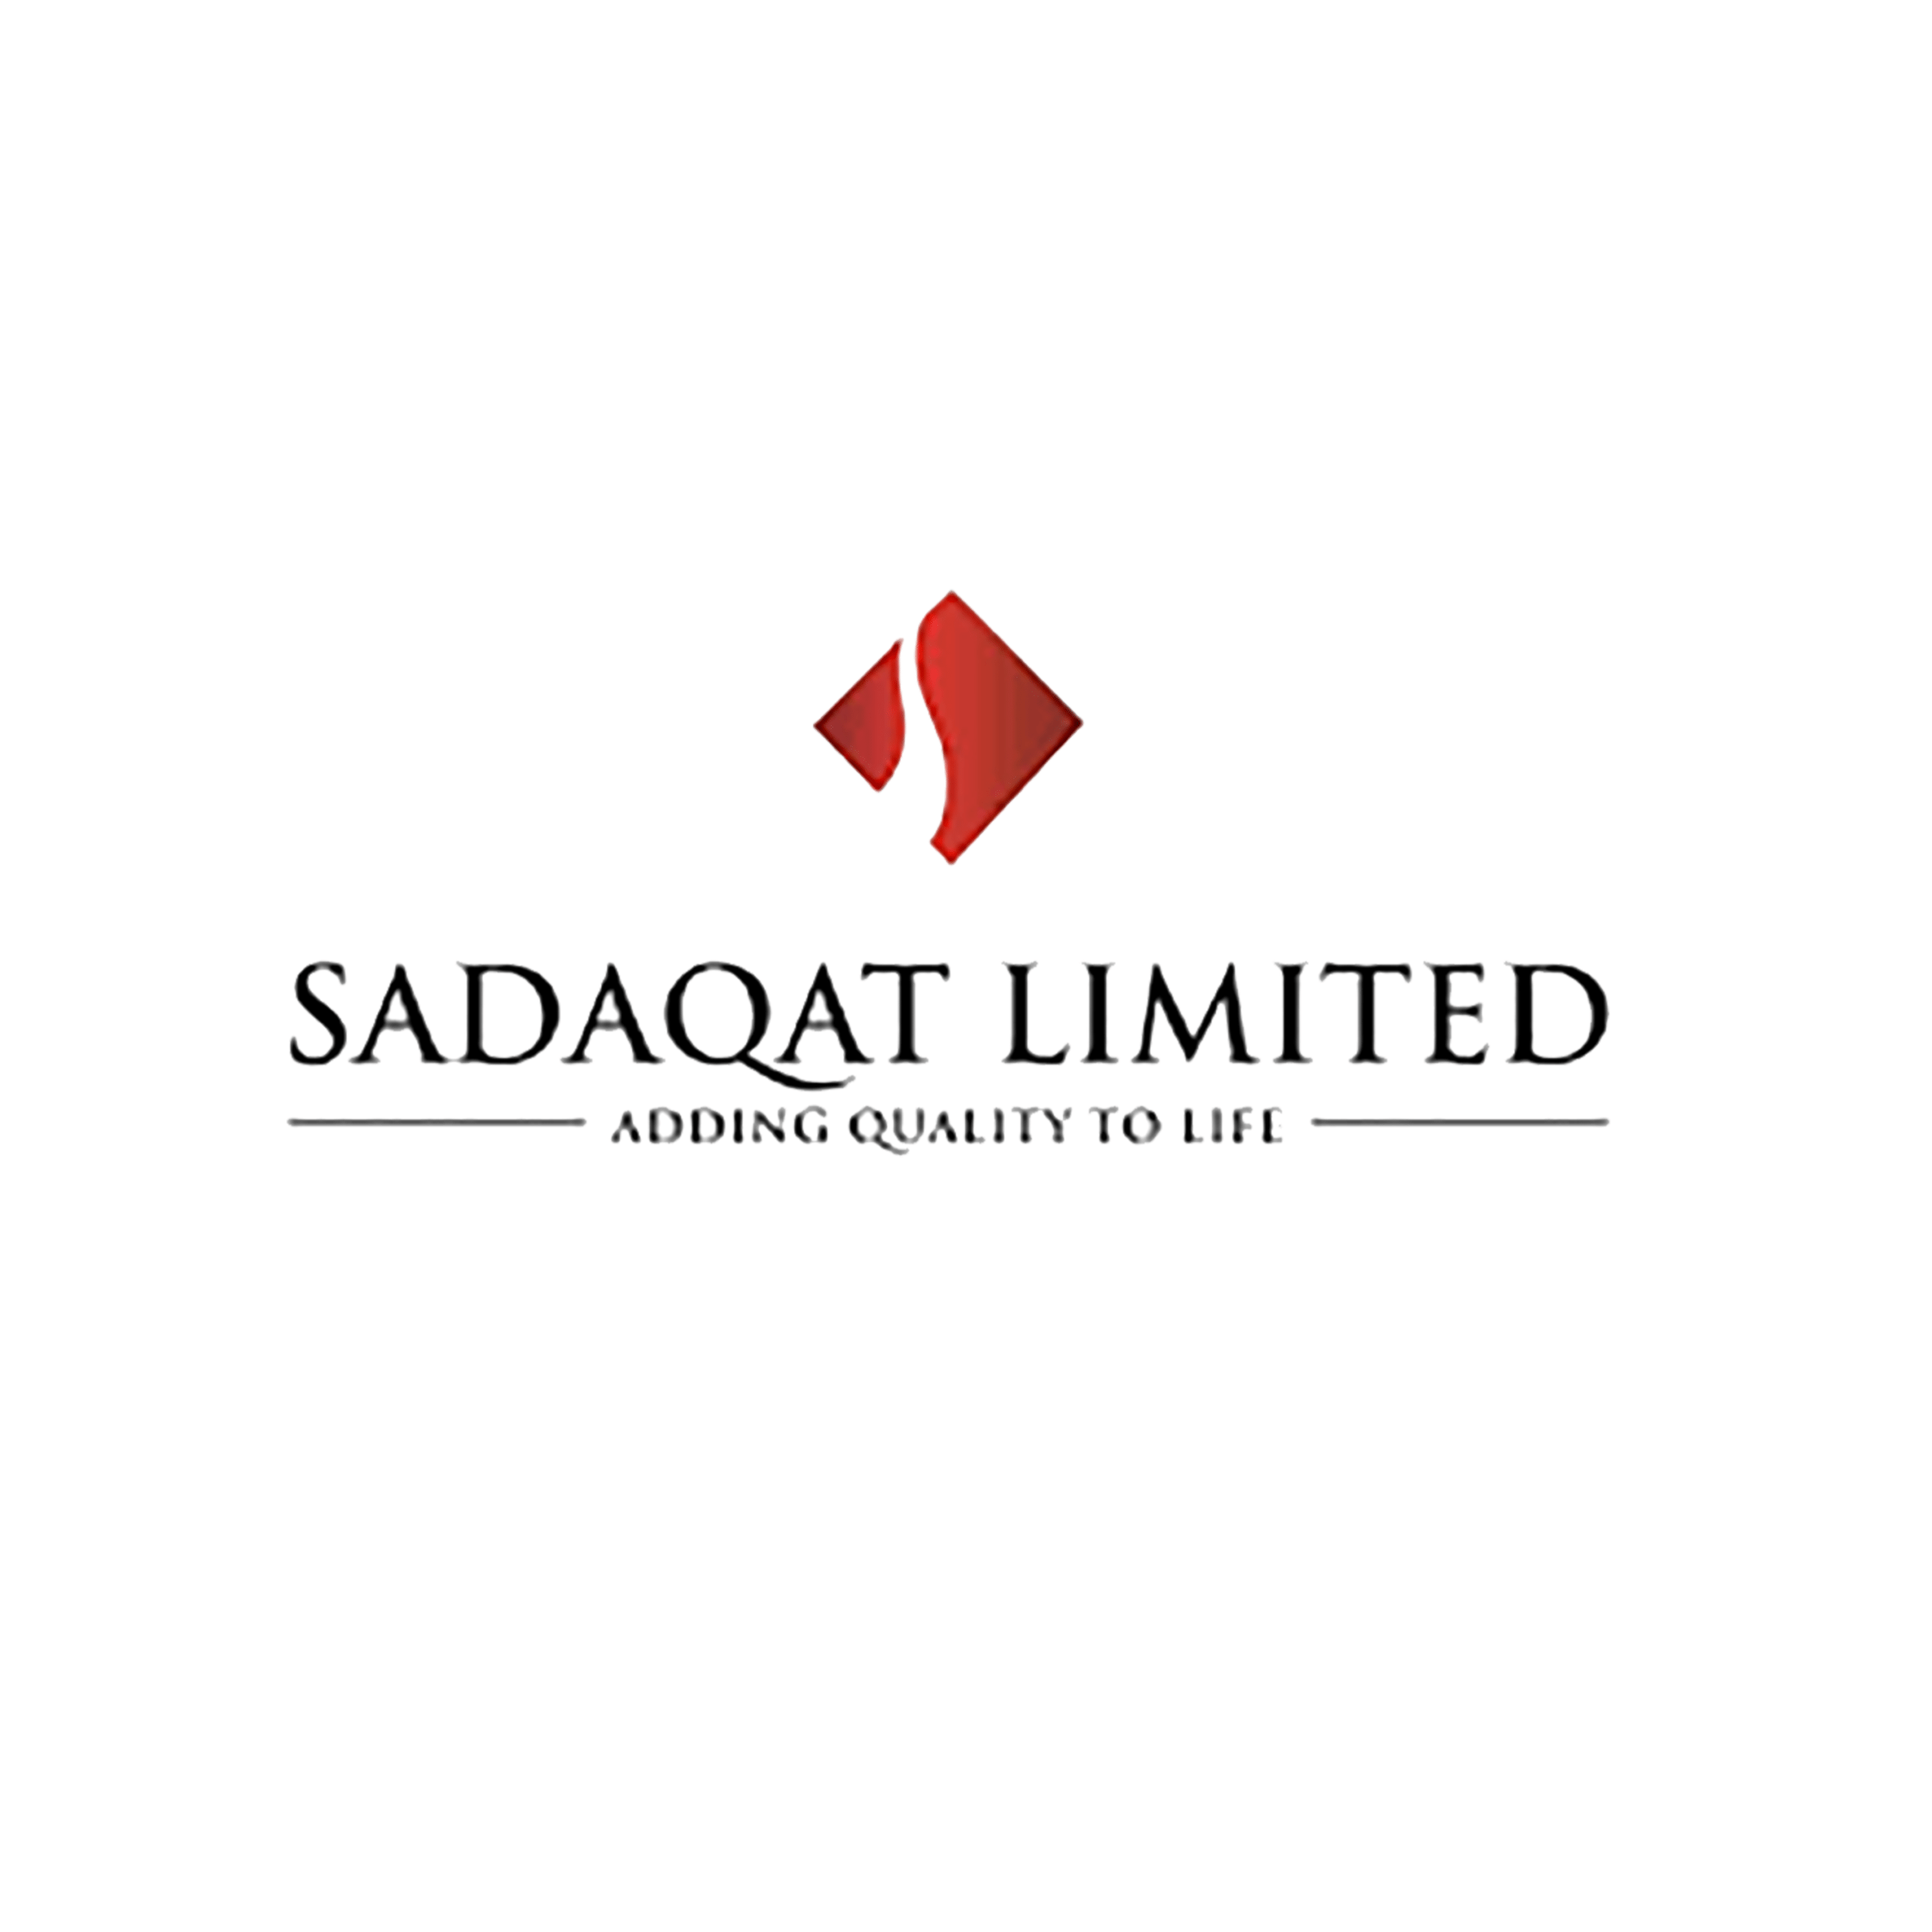 Sadaqat limited